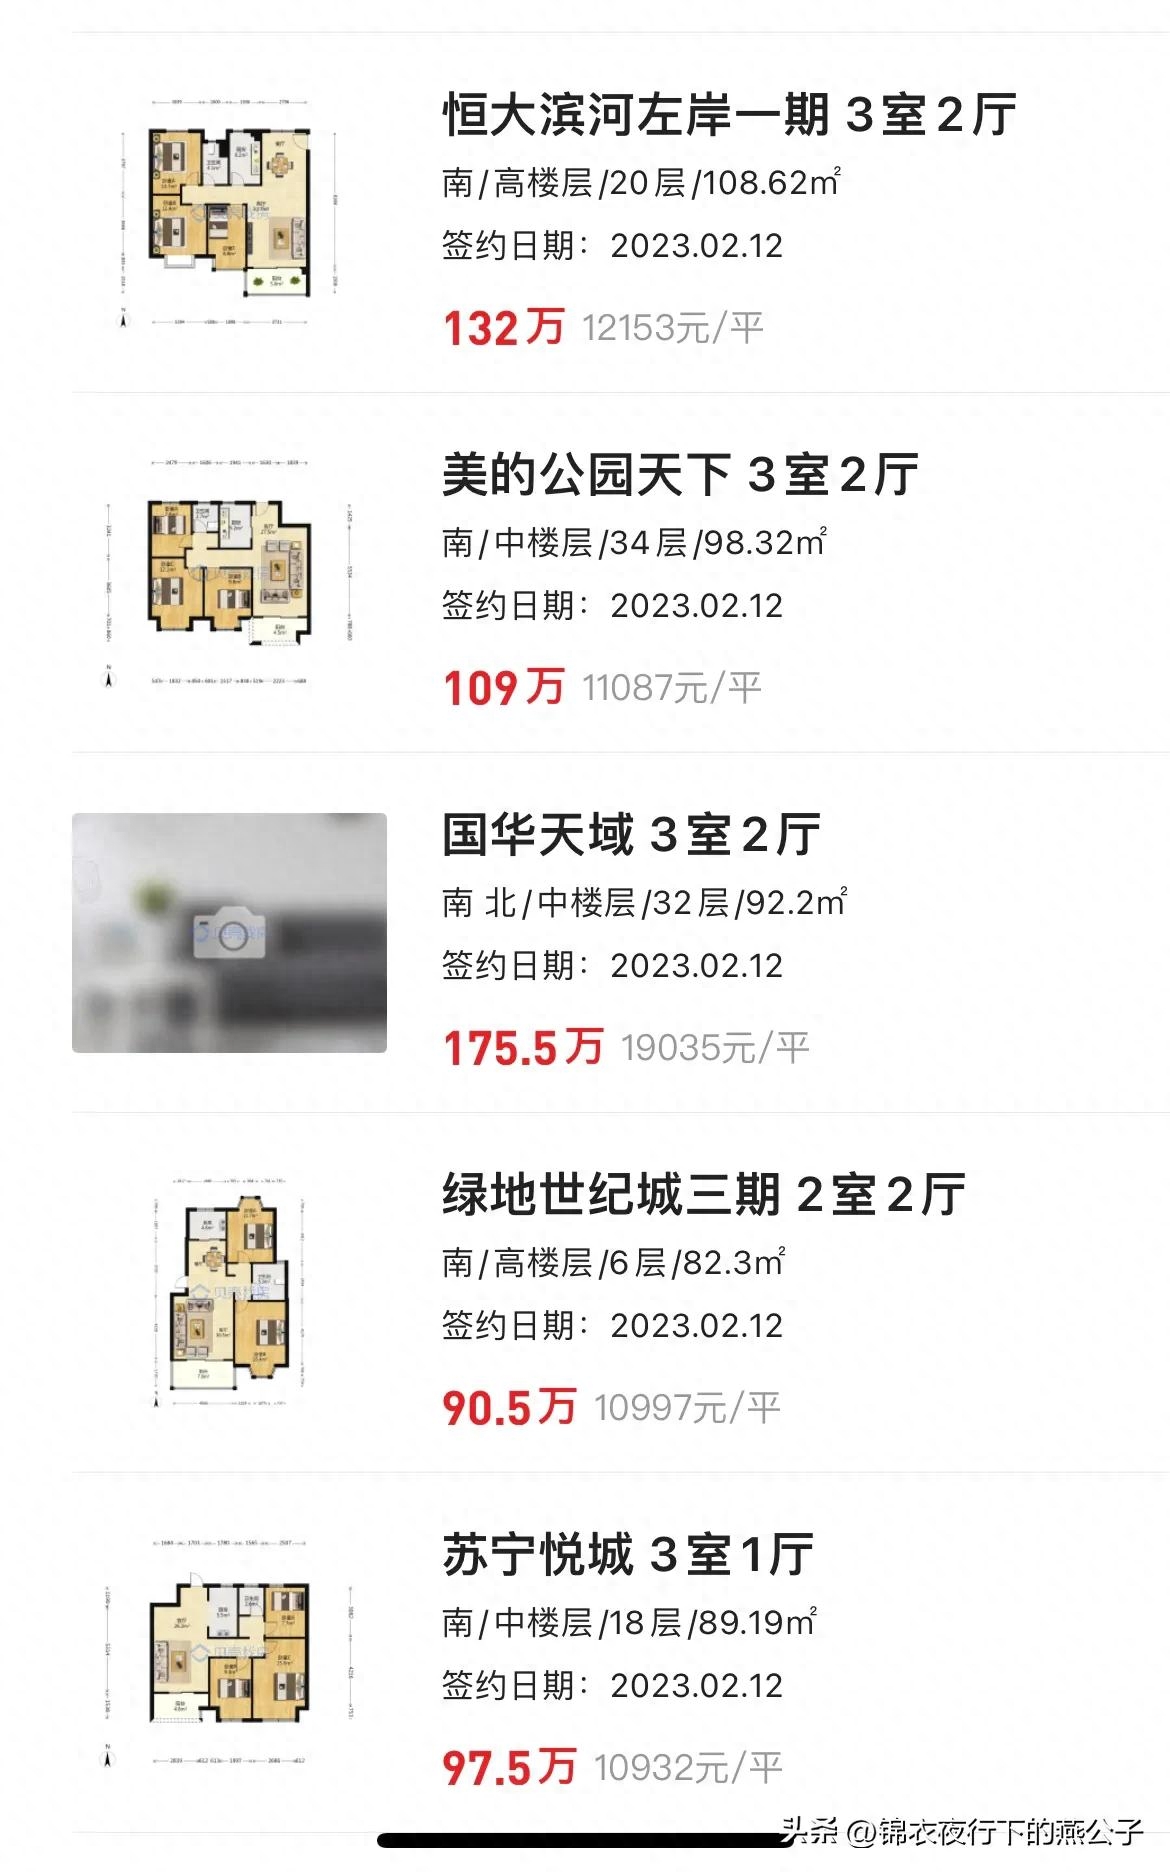 上海绿地世纪城一期二手房价格_绿地世纪城二期 上海 价格_上海绿地世纪城房价多少